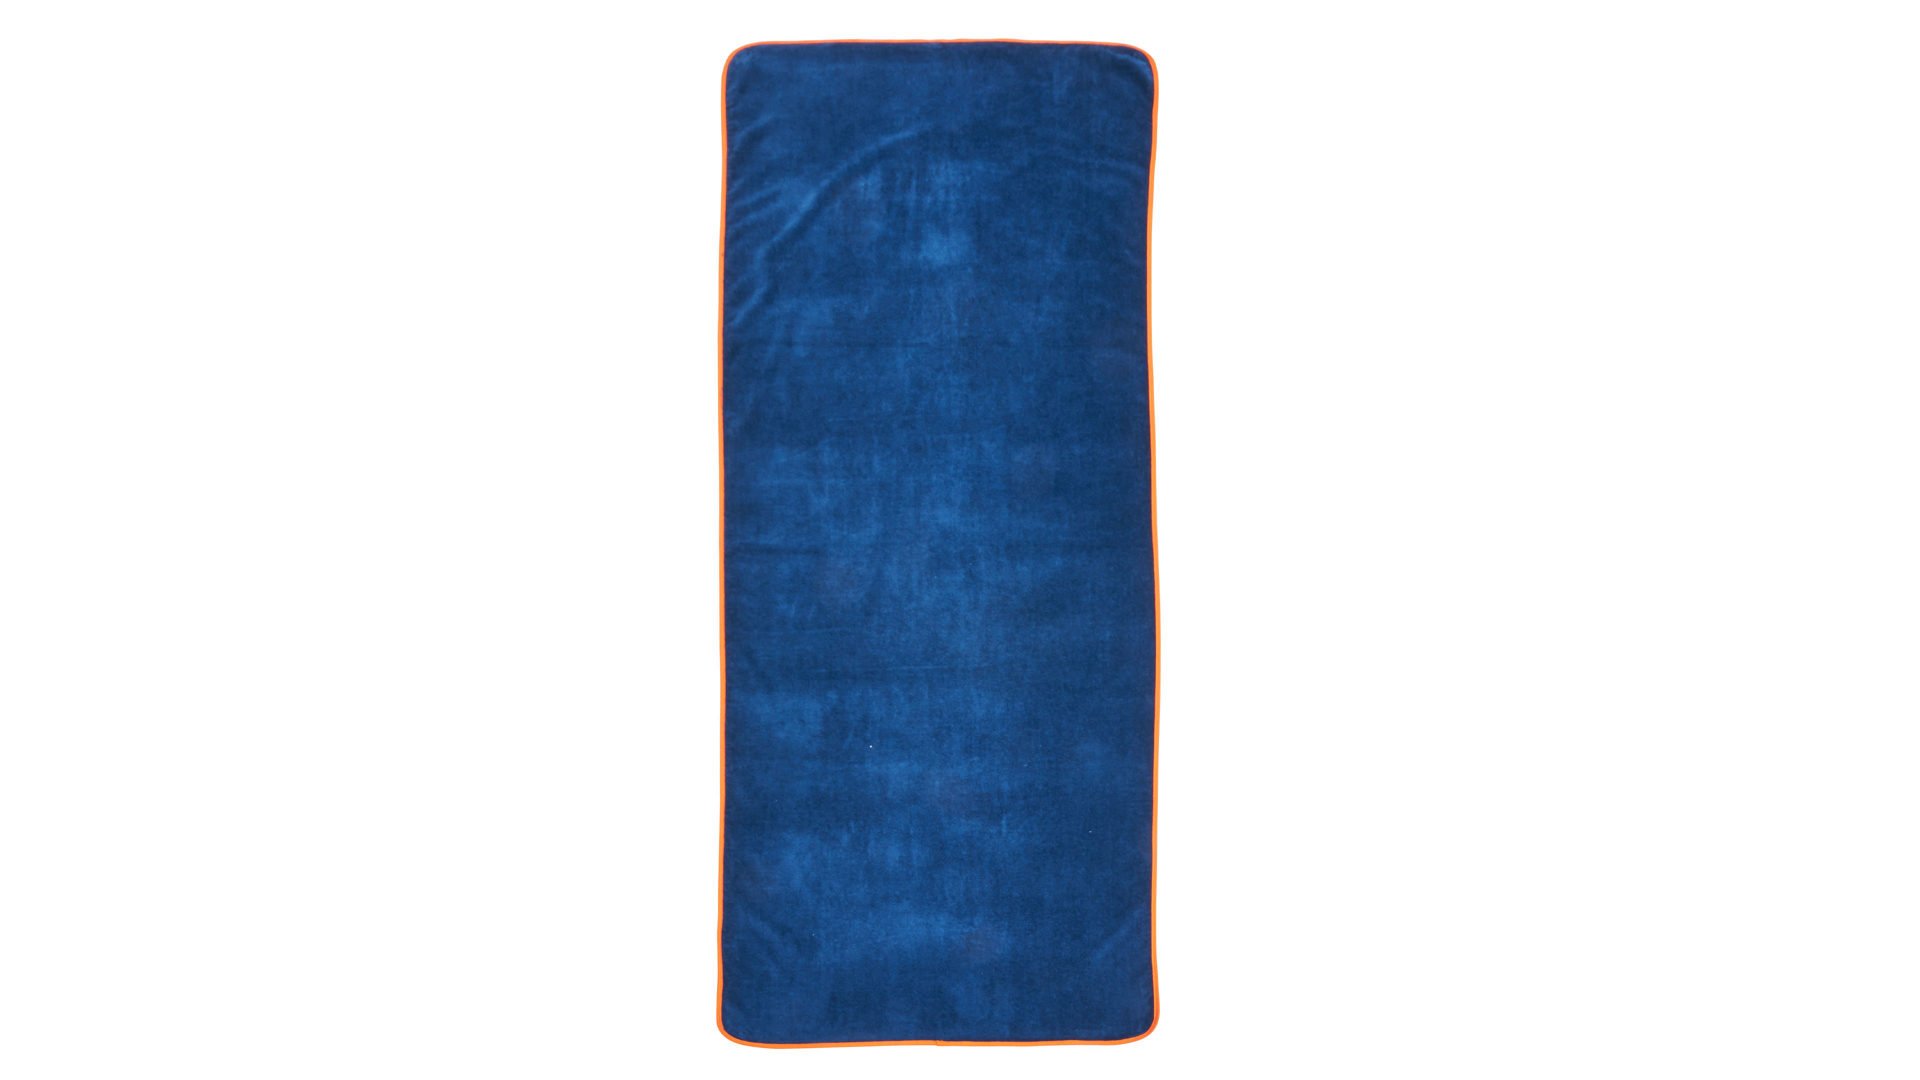 Saunahandtuch Done® be different aus Stoff in Dunkelblau DONE® Saunatuch marineblaue Baumwolle – ca. 80 x 200 cm